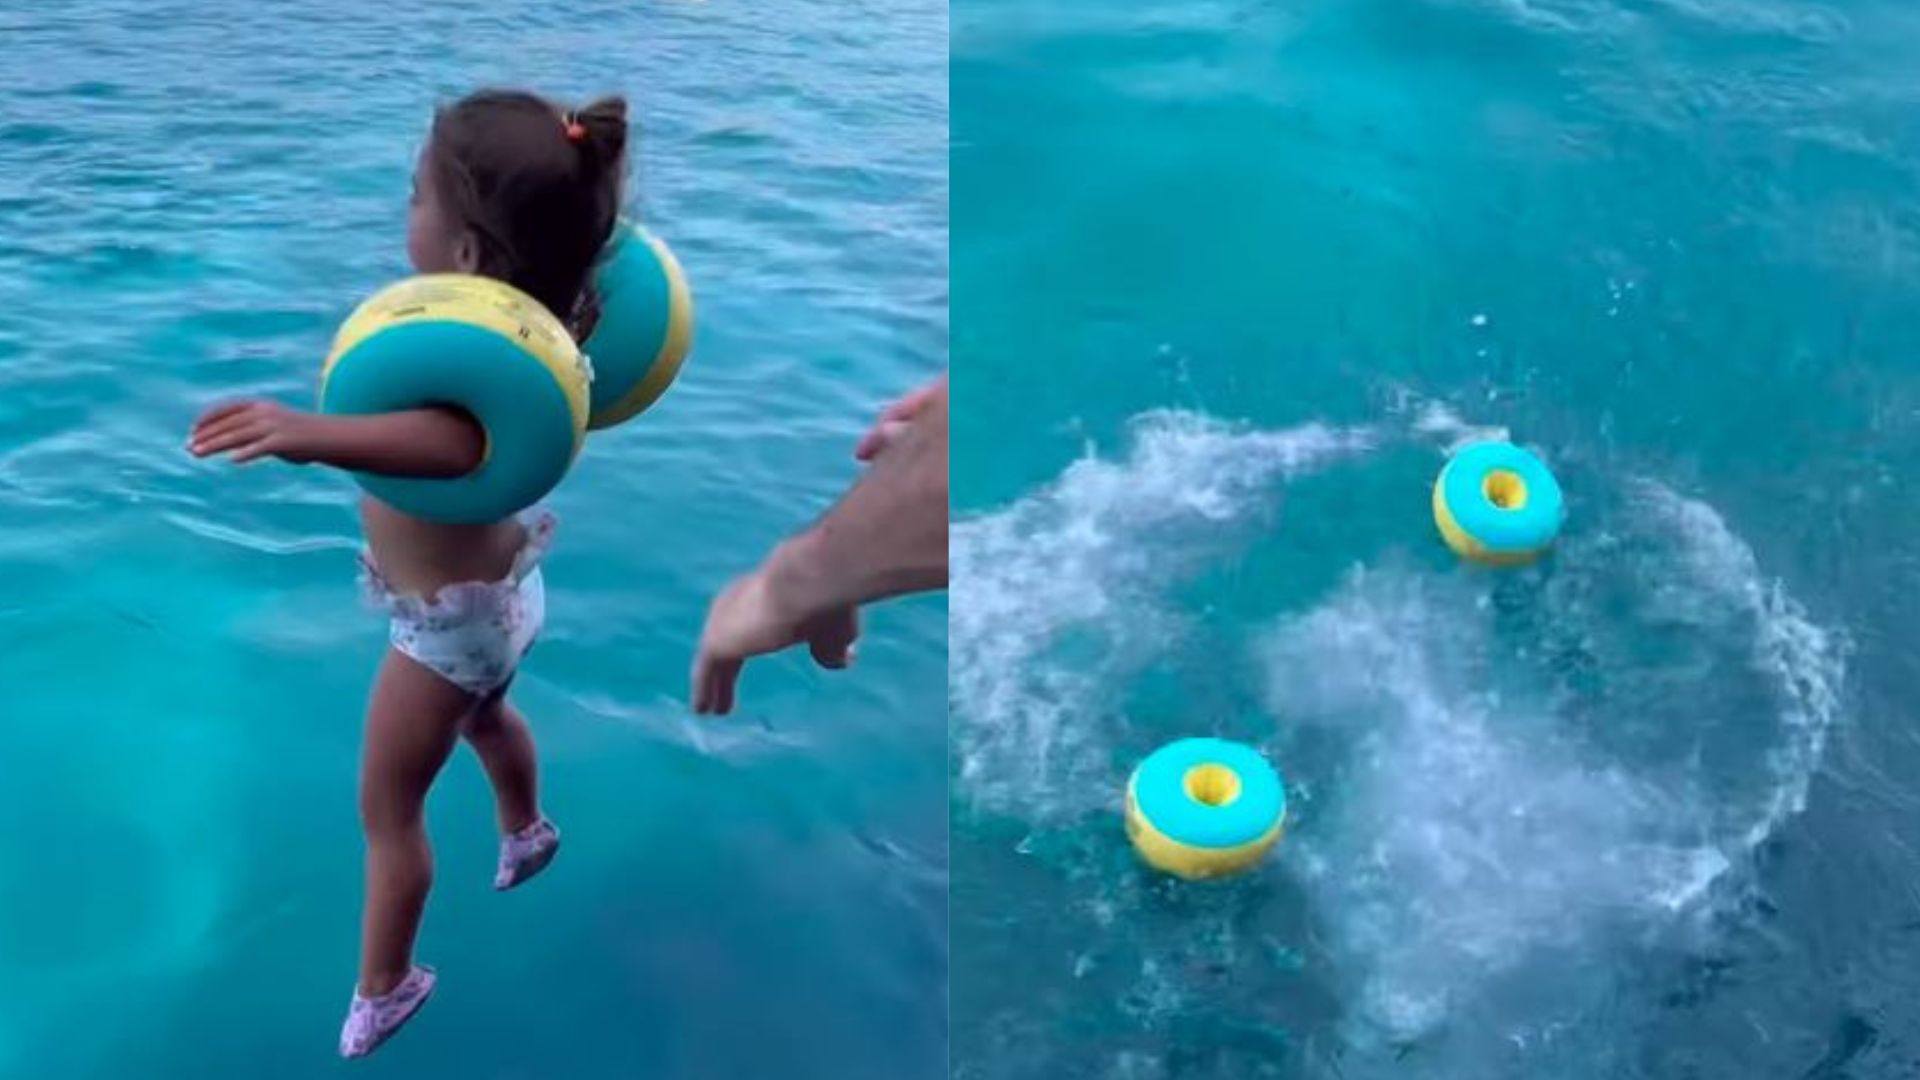 Τουρκία: Πέταξε κοριτσάκι από σκάφος στη θάλασσα και... εξαφανίστηκε - Το βίντεο που έγινε viral